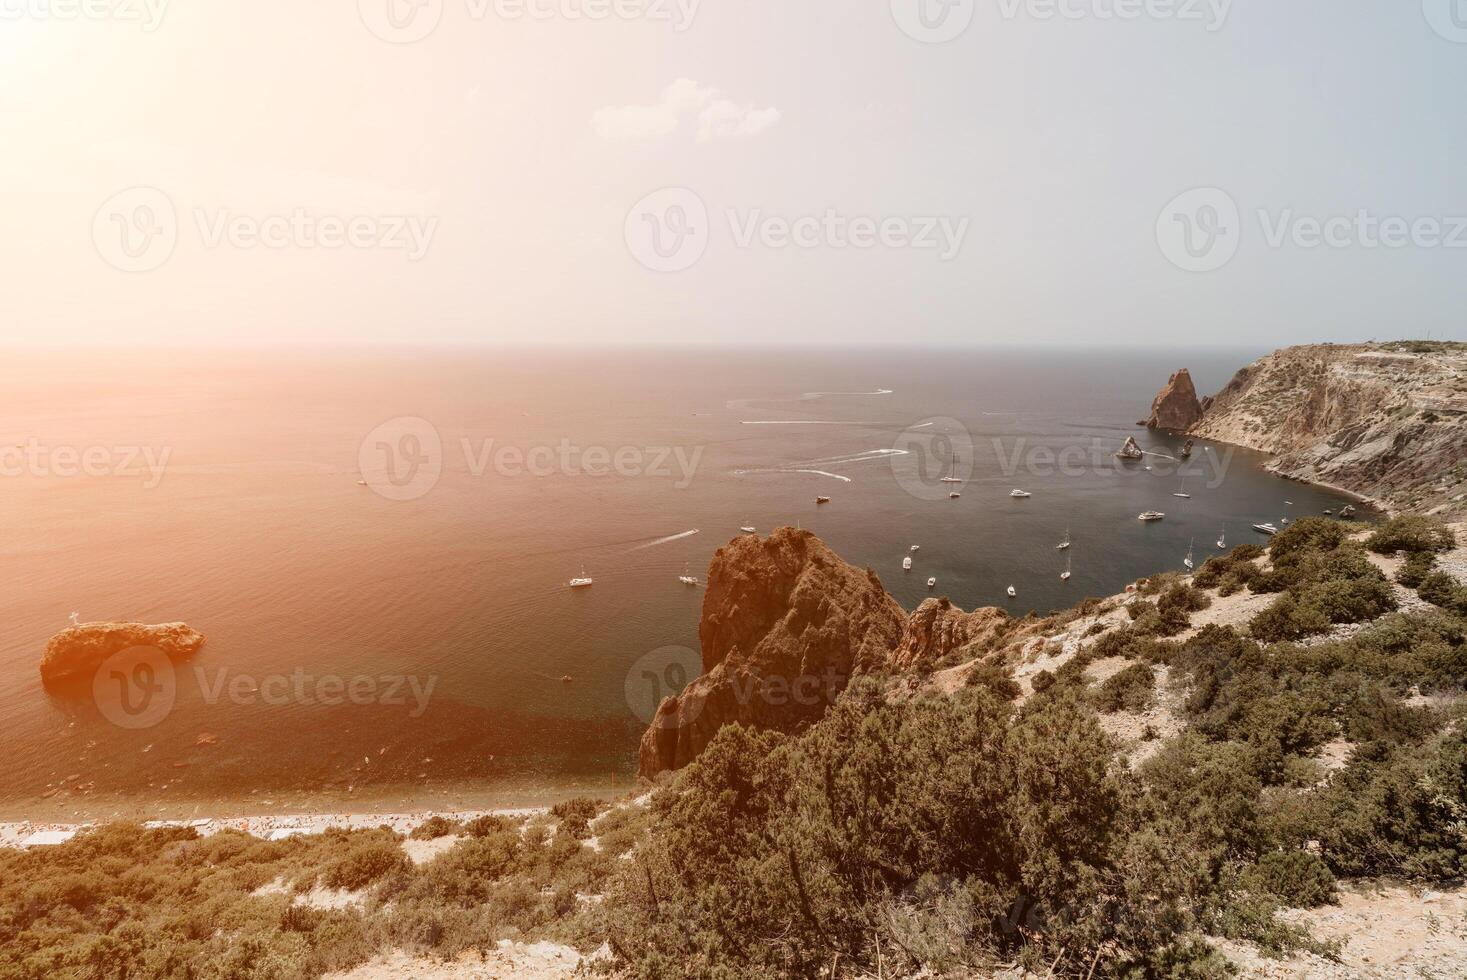 hav lagun. panorama- se på lugna azurblå hav och vulkanisk klippig foto